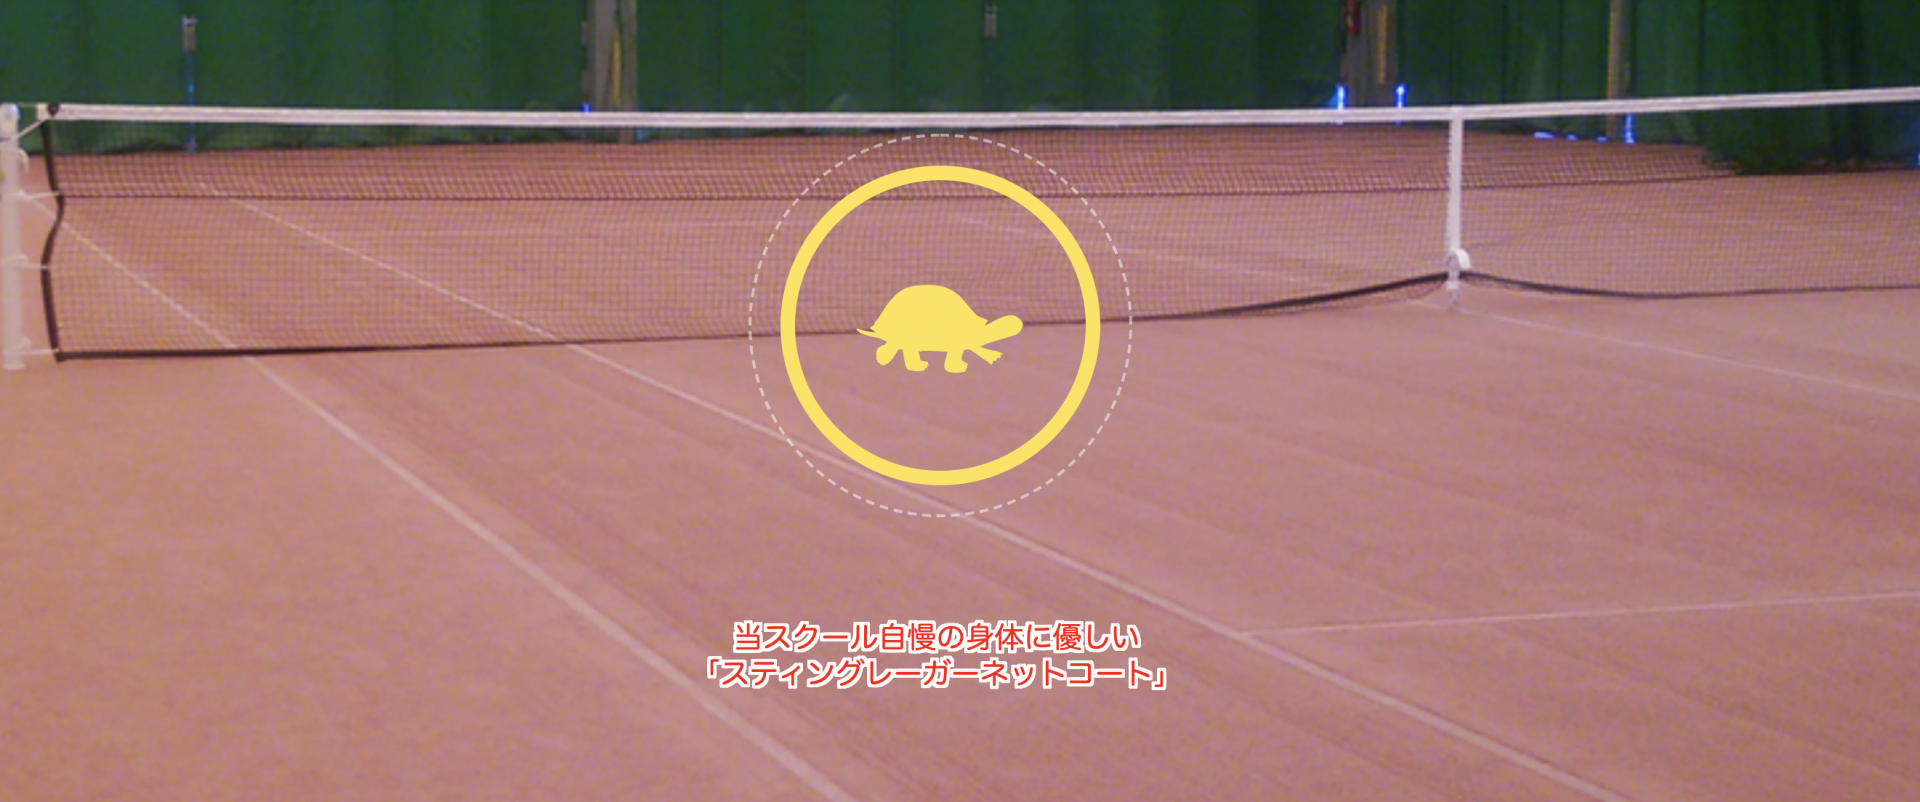 トータスランテニスクラブ テニススクールコンシェルジュ